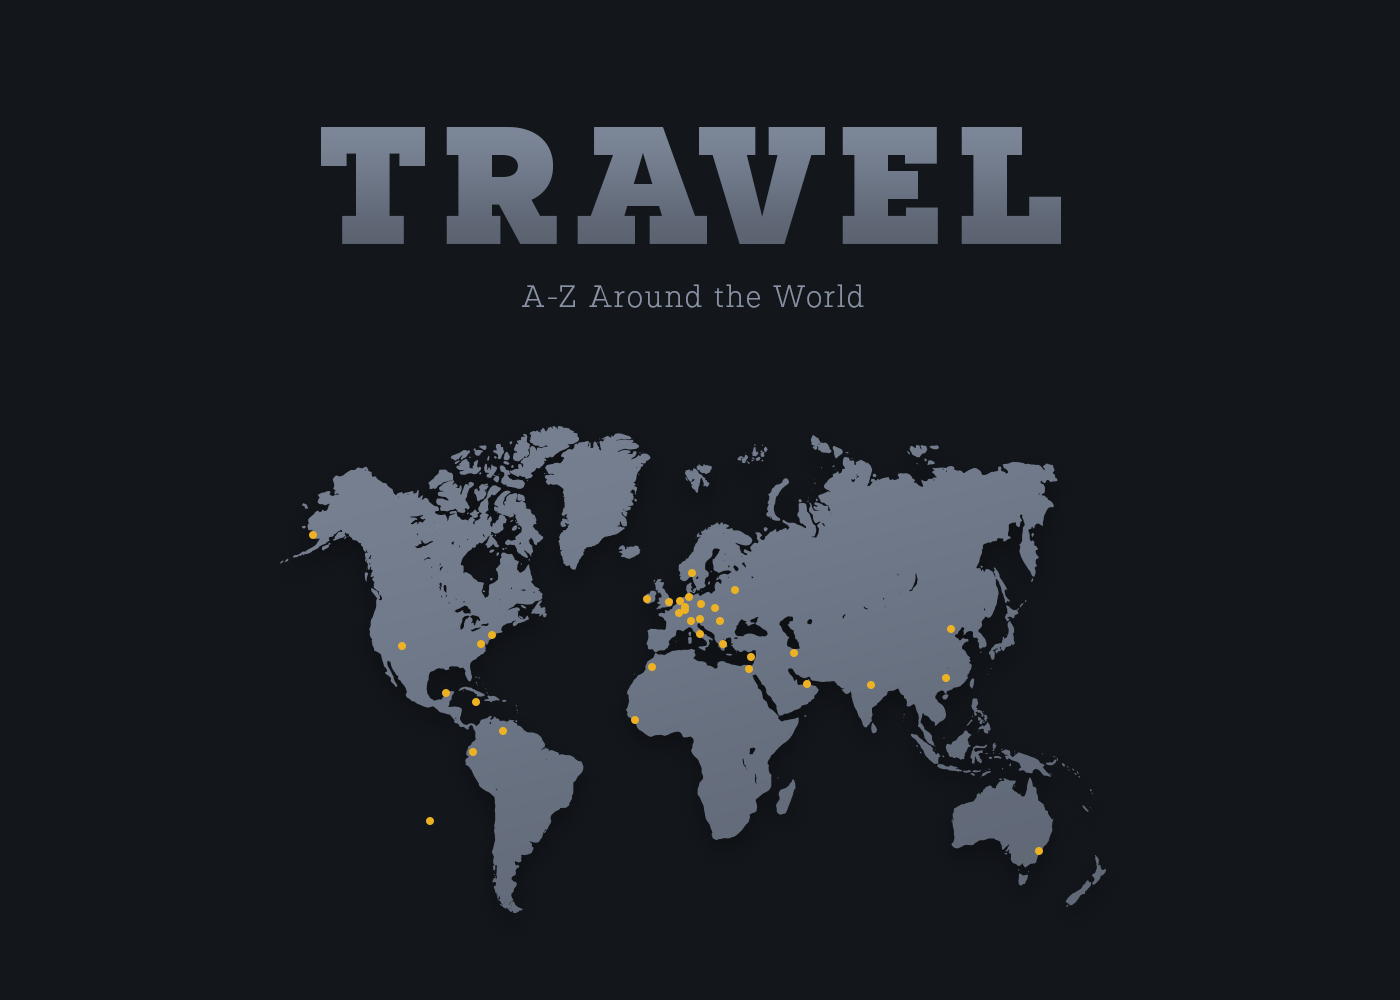 Paul Slab font Travel world artill